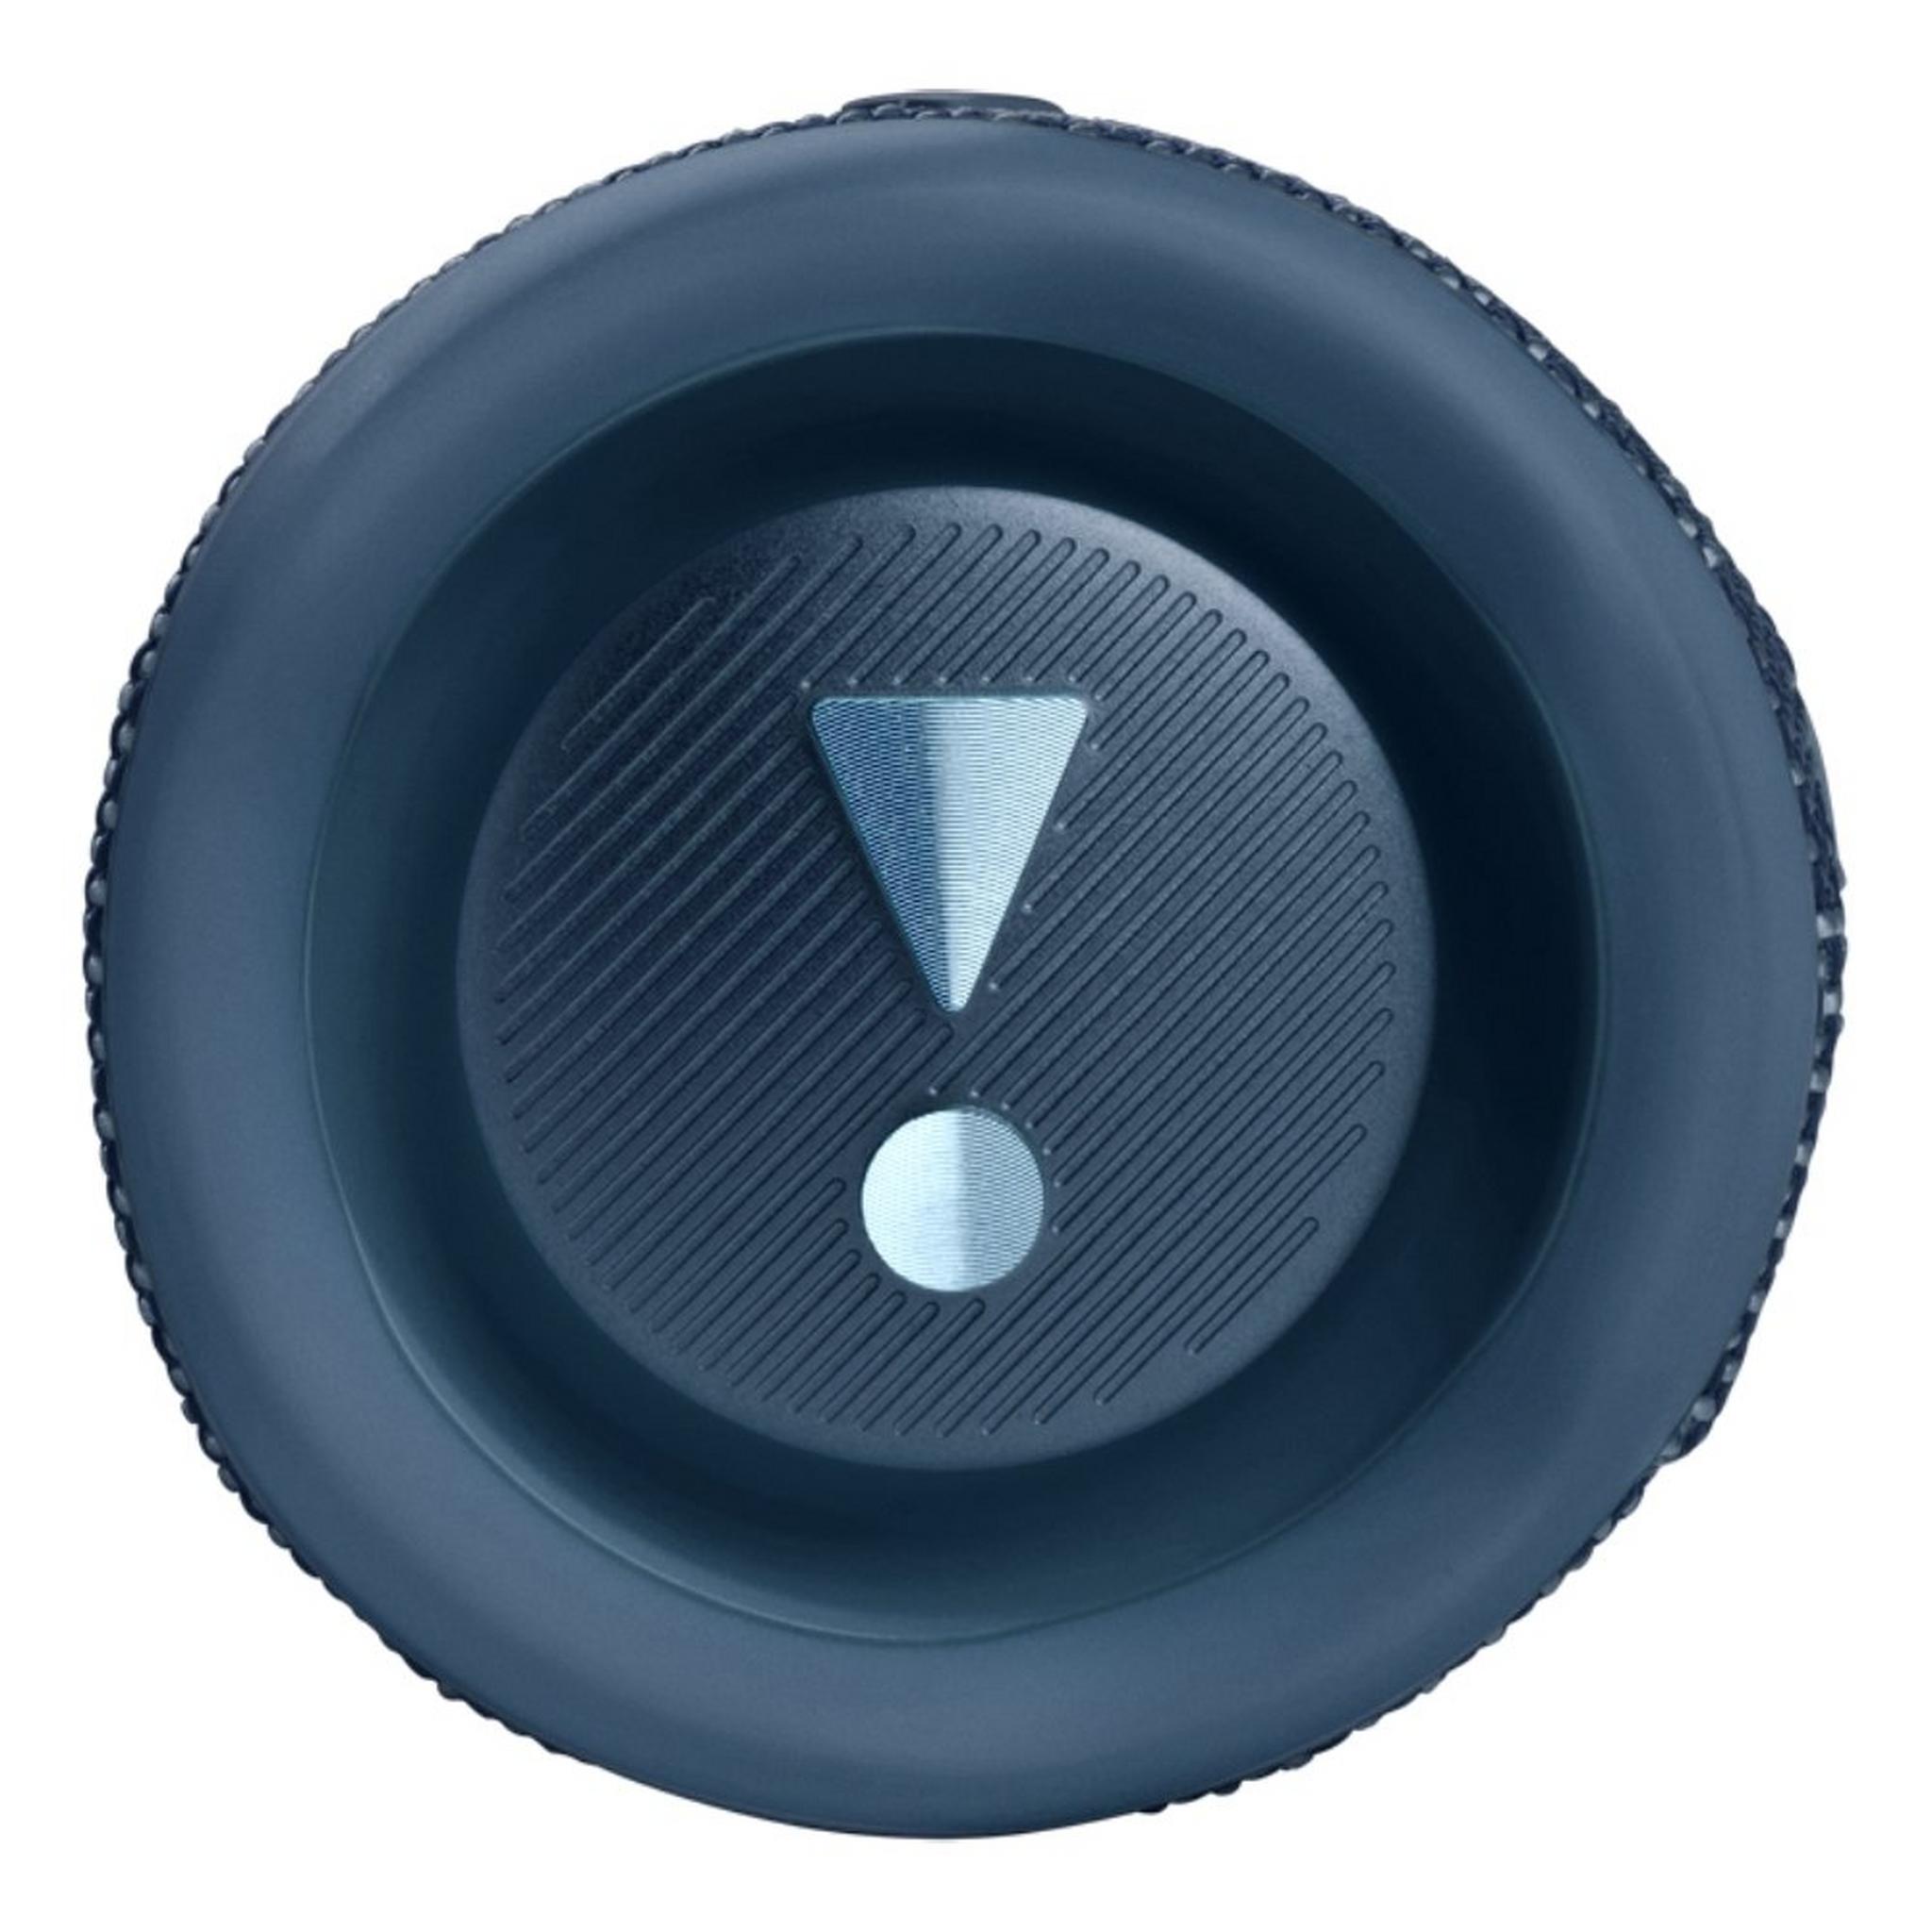 مكبر الصوت اللاسلكي فليب 6 مقاوم للماء من جي بي ال - أزرق